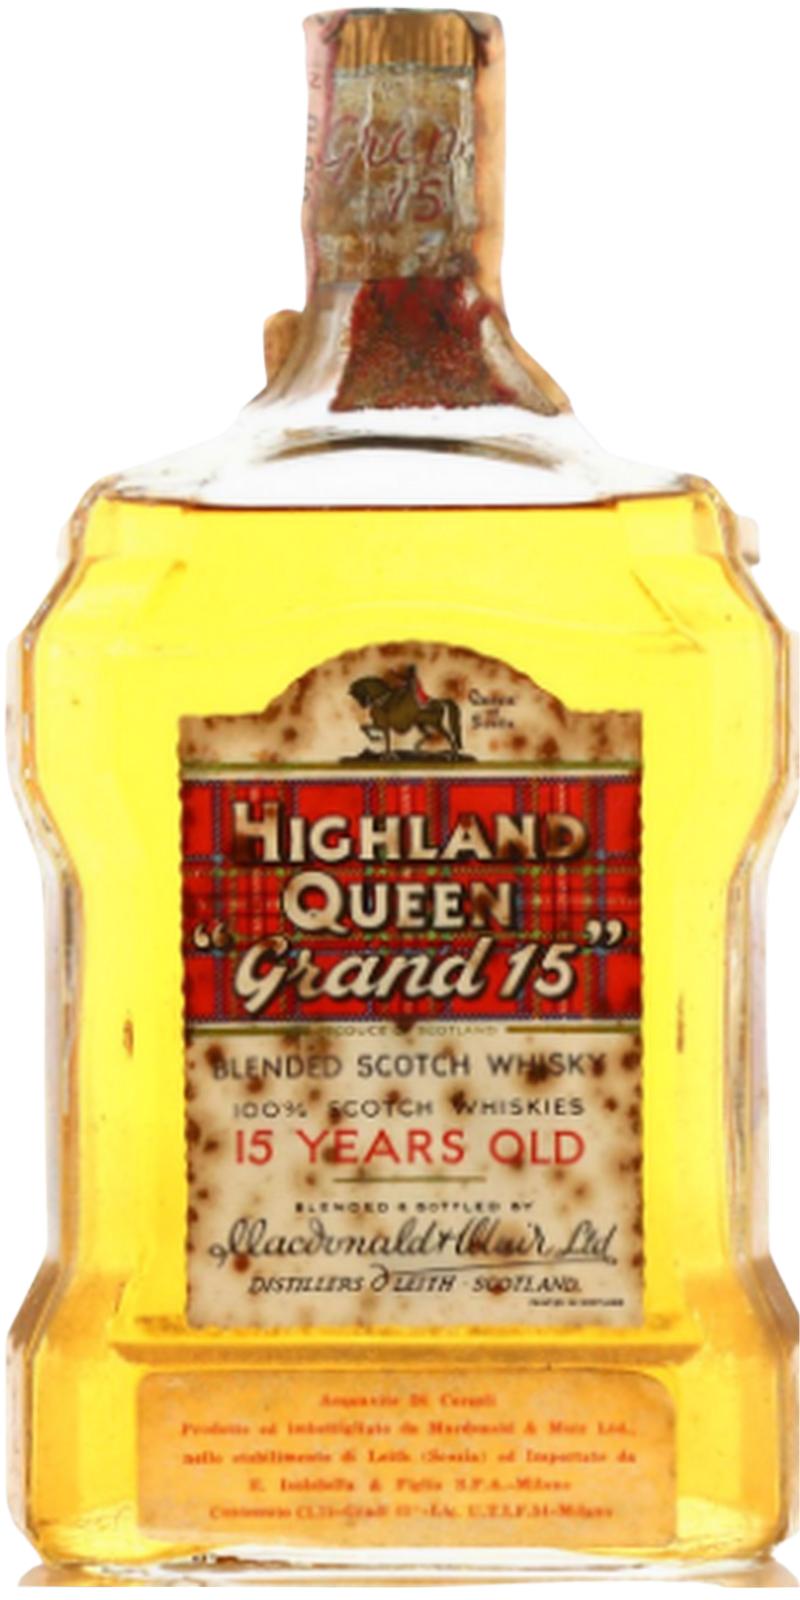 Highland Queen 15yo Grand 15 Imported by E Isolabella & Figlio S.P.A. Milano 43% 750ml